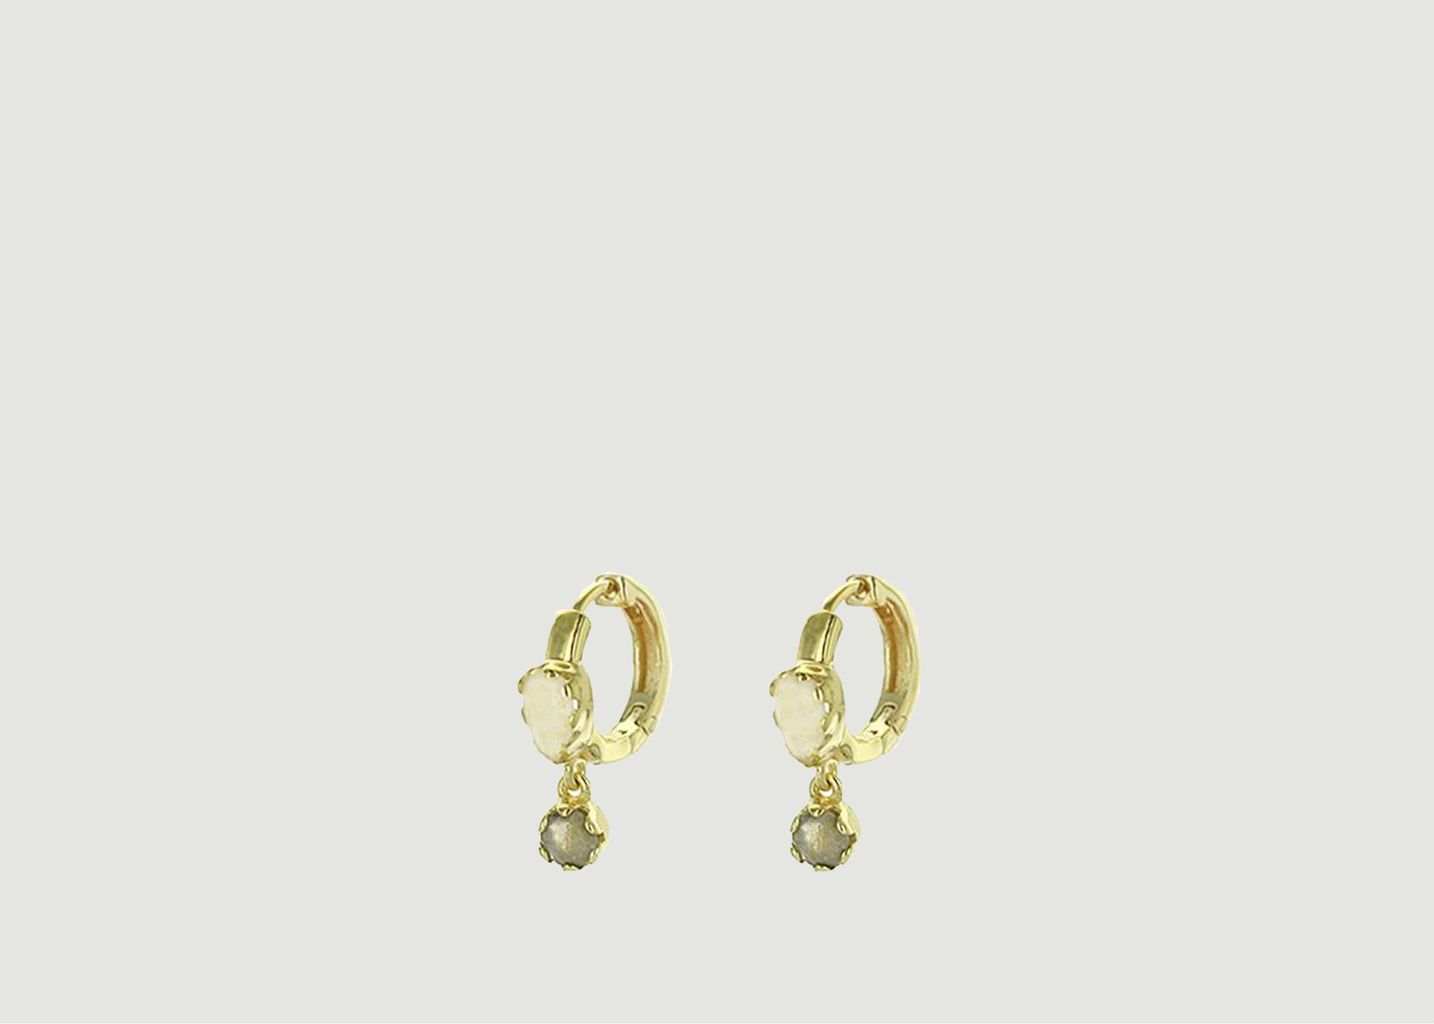 Safra earrings - Be Maad